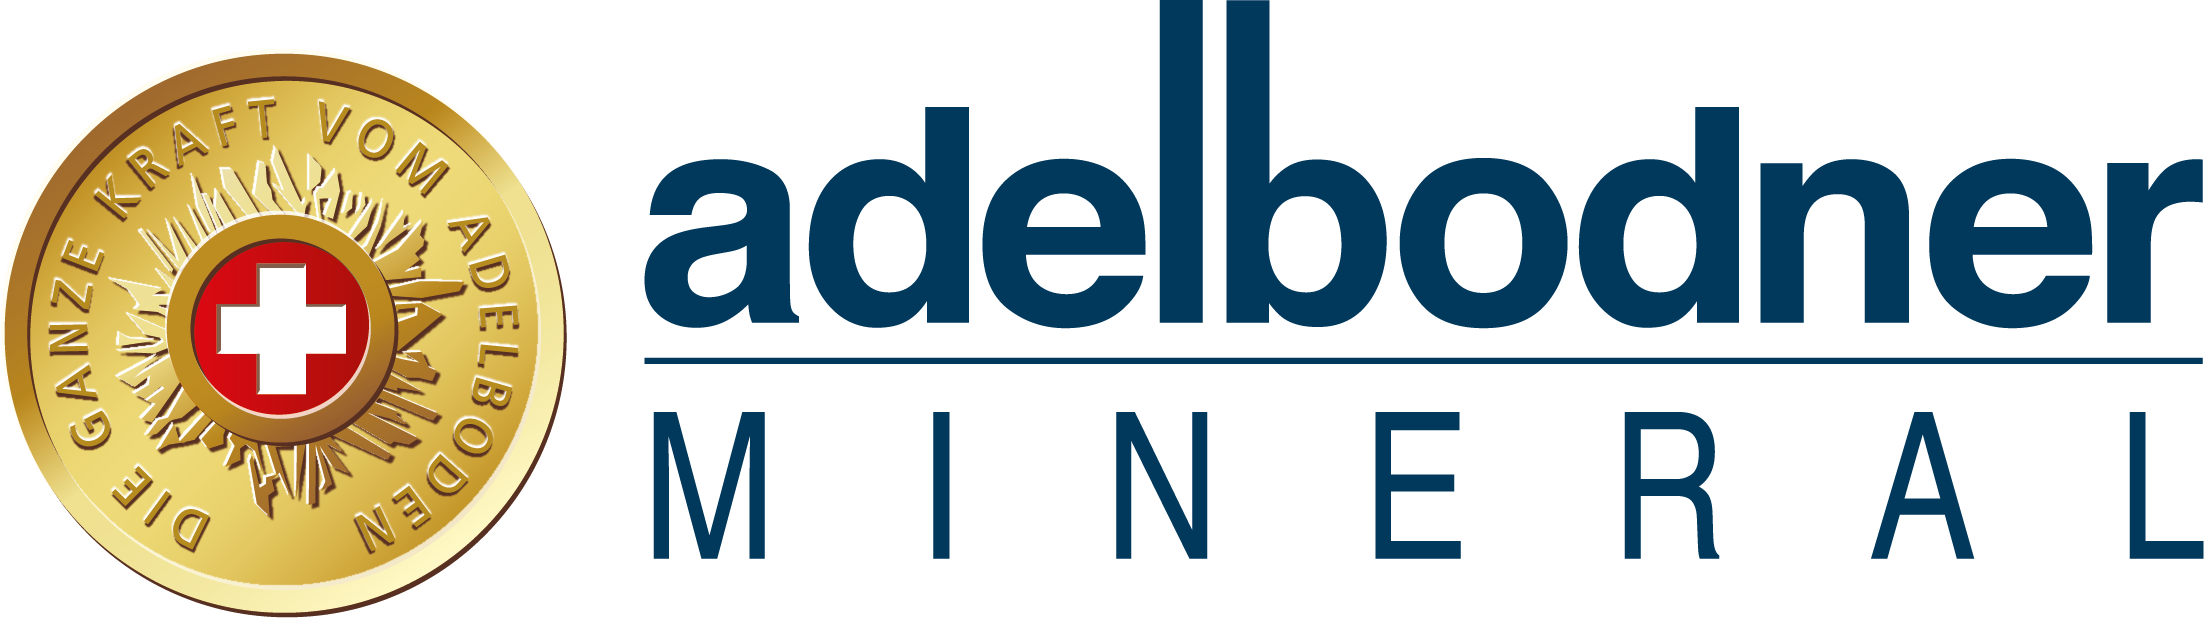 Adelbodner Mineral